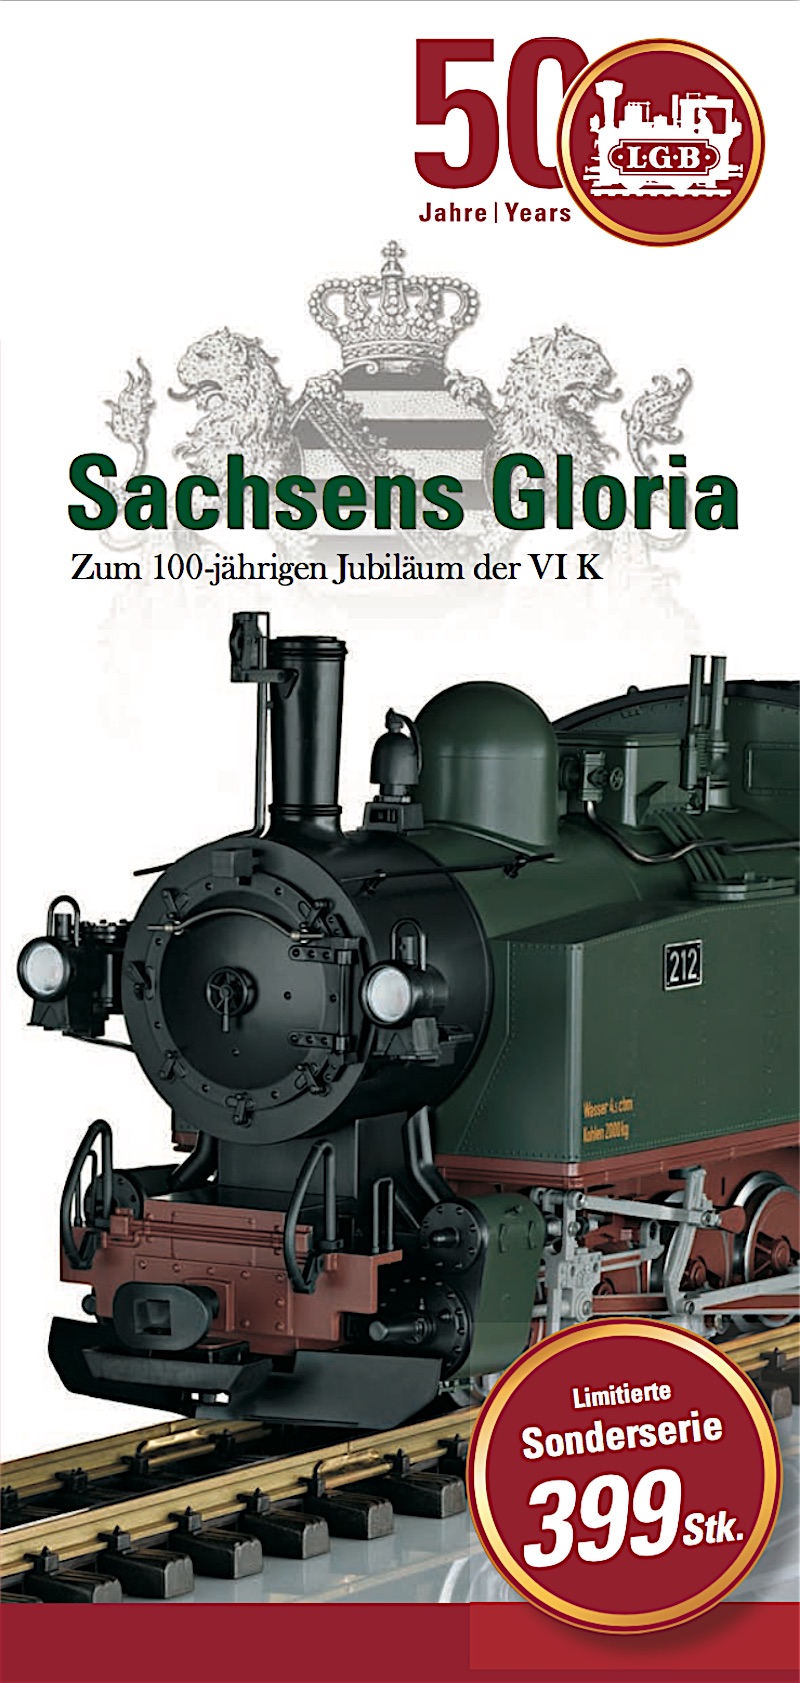 LGB Faltblatt (Flyer) - Sachsens Gloria